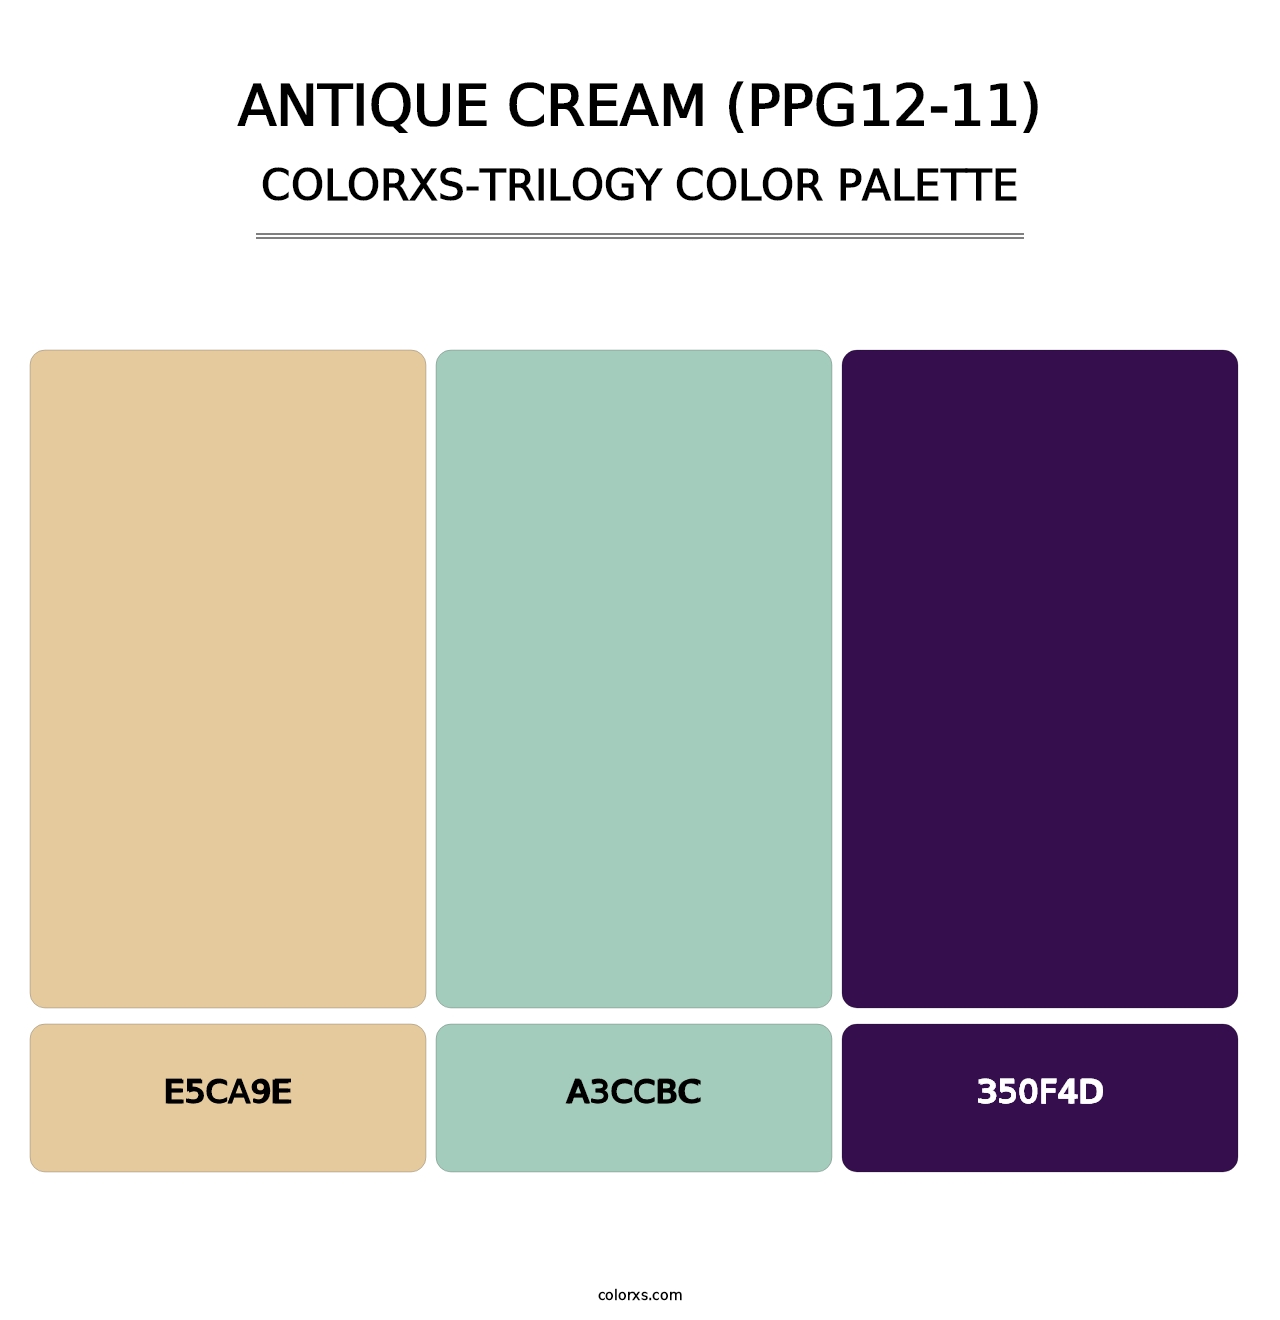 Antique Cream (PPG12-11) - Colorxs Trilogy Palette